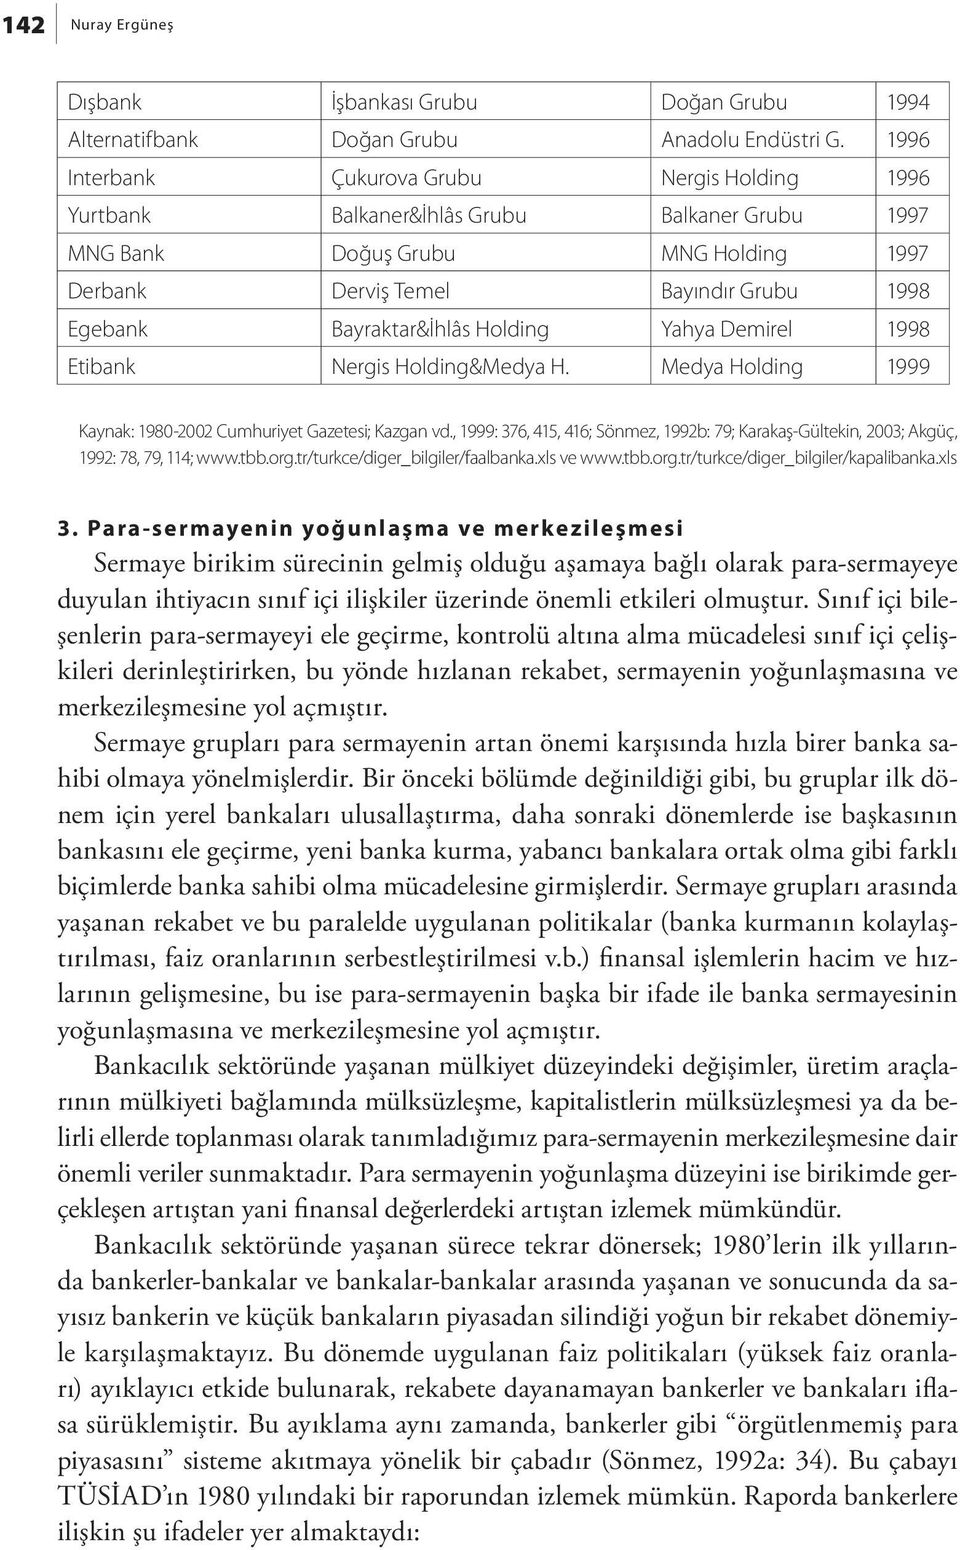 Bayraktar&İhlâs Holding Yahya Demirel 1998 Etibank Nergis Holding&Medya H. Medya Holding 1999 Kaynak: 1980-2002 Cumhuriyet Gazetesi; Kazgan vd.